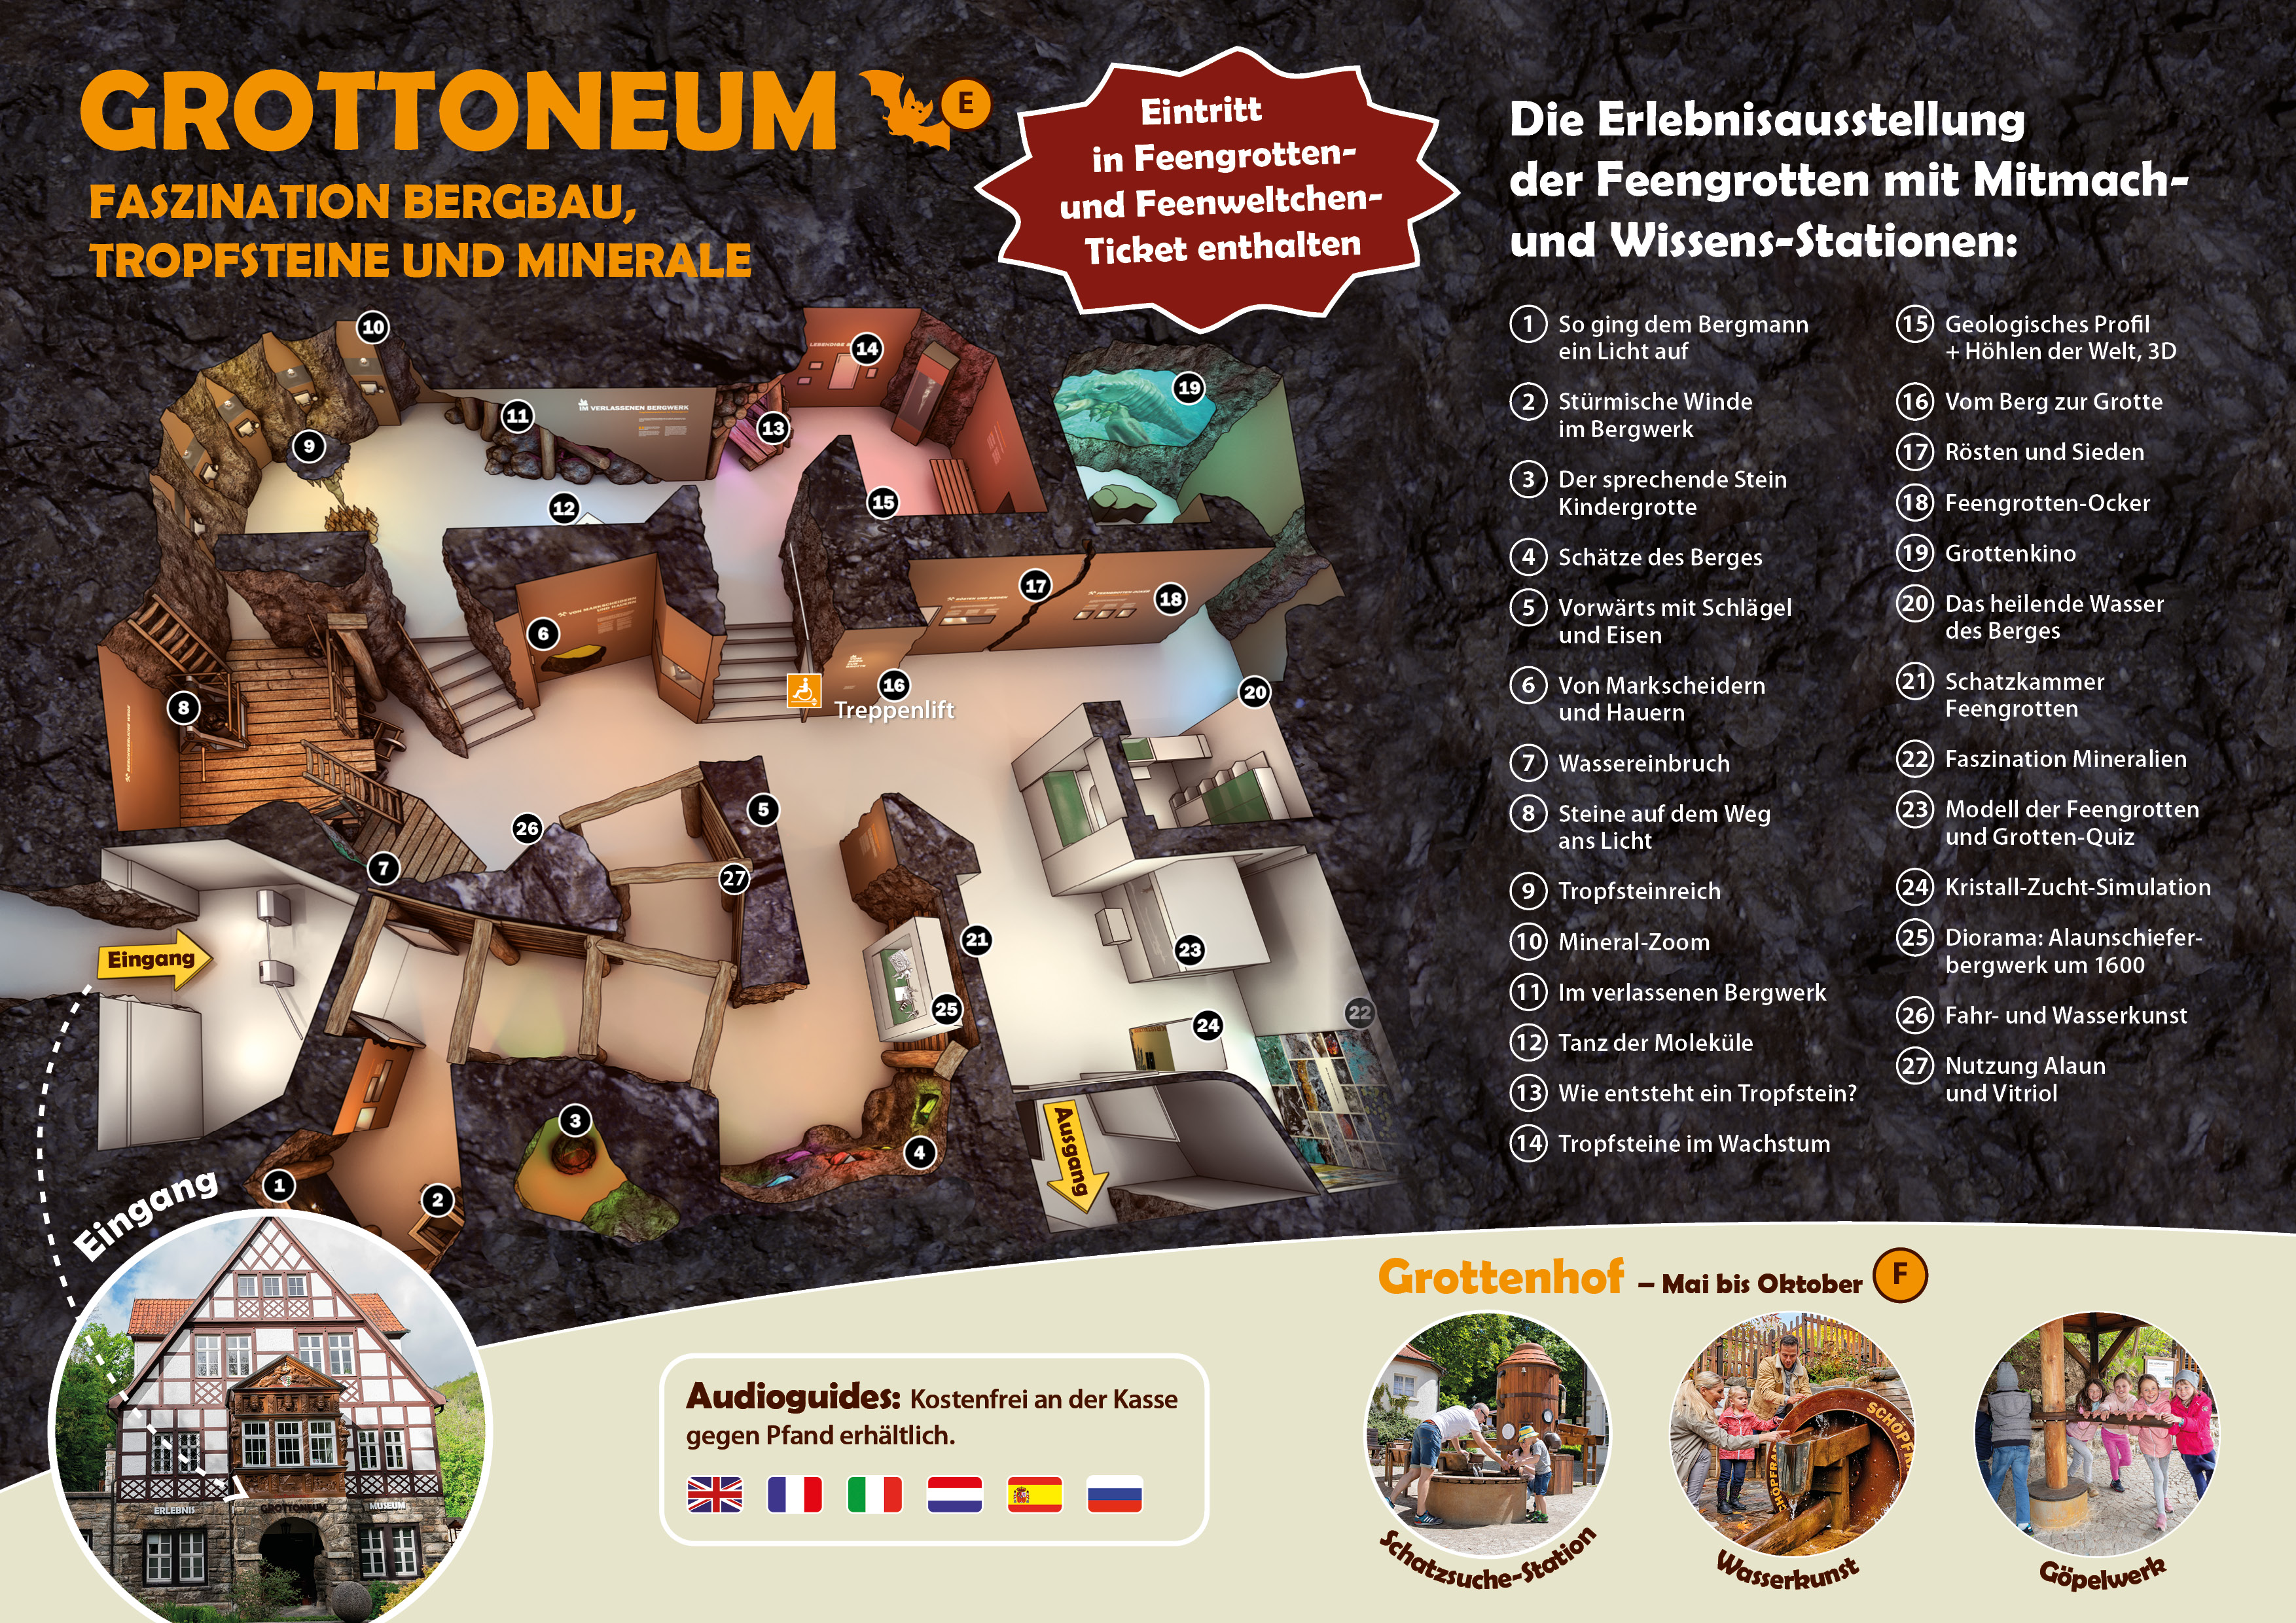 Erlebnismuseum Grottoneum